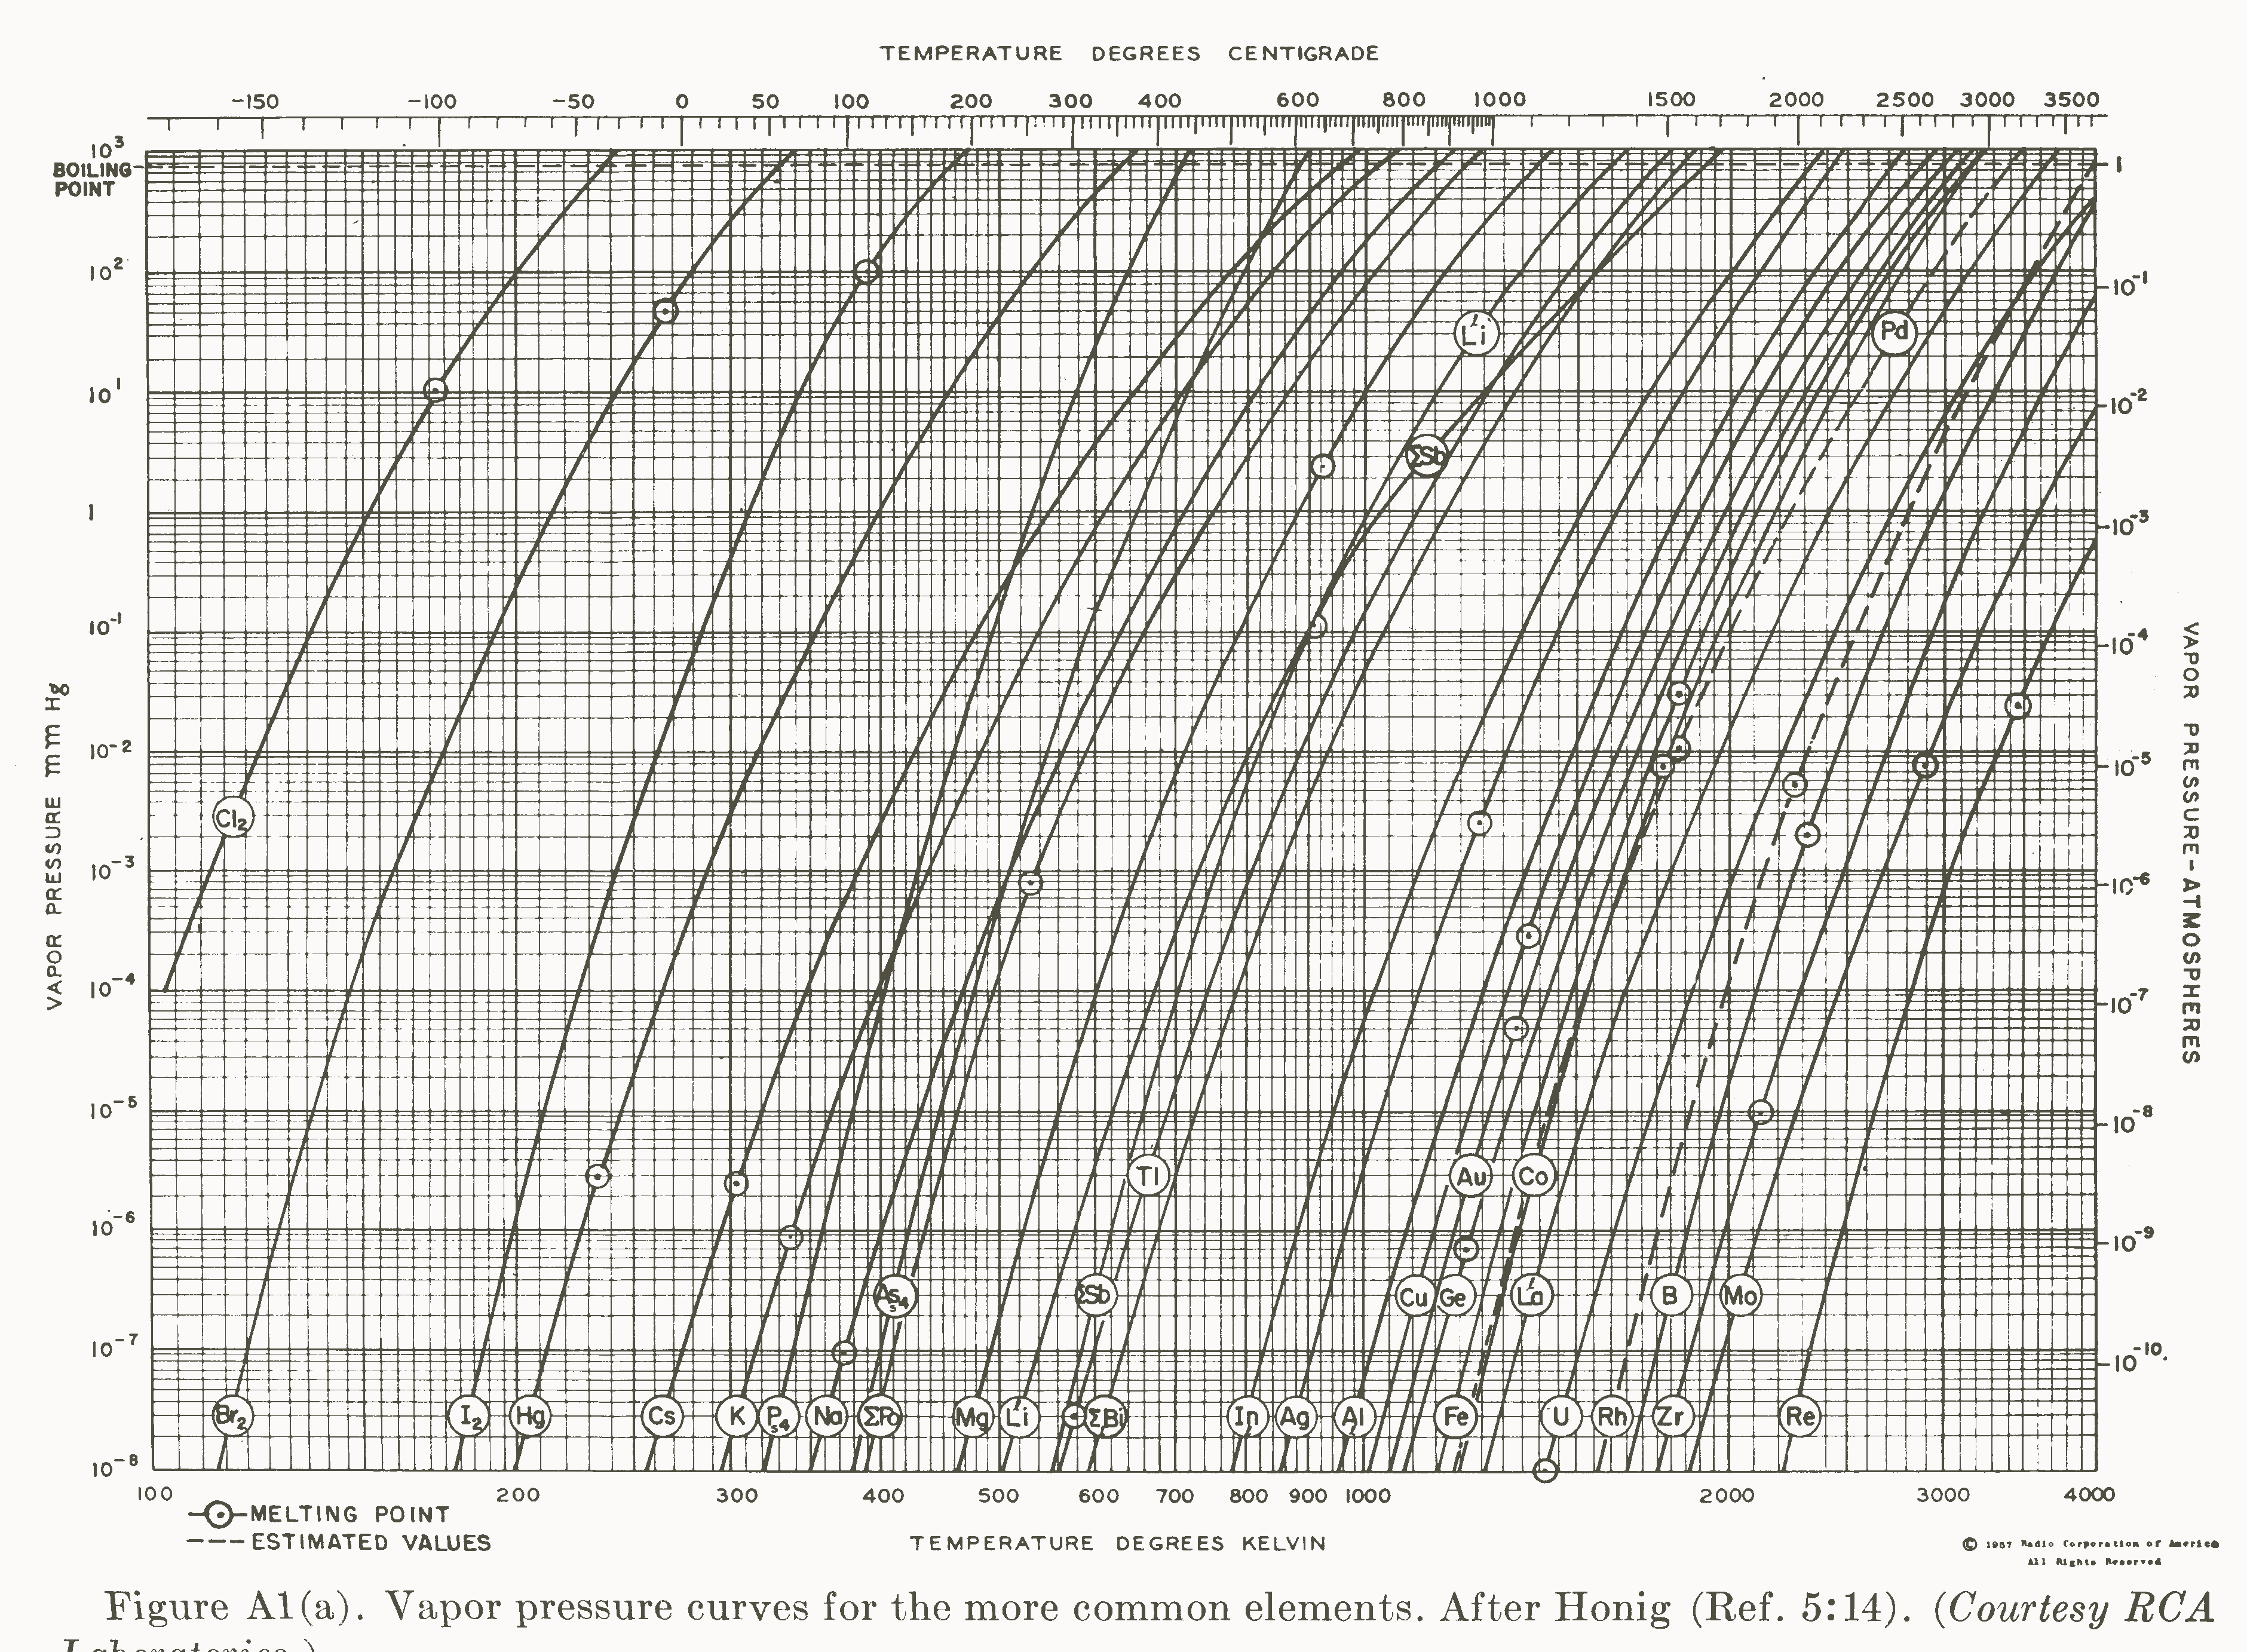 Vapour Pressure Chart